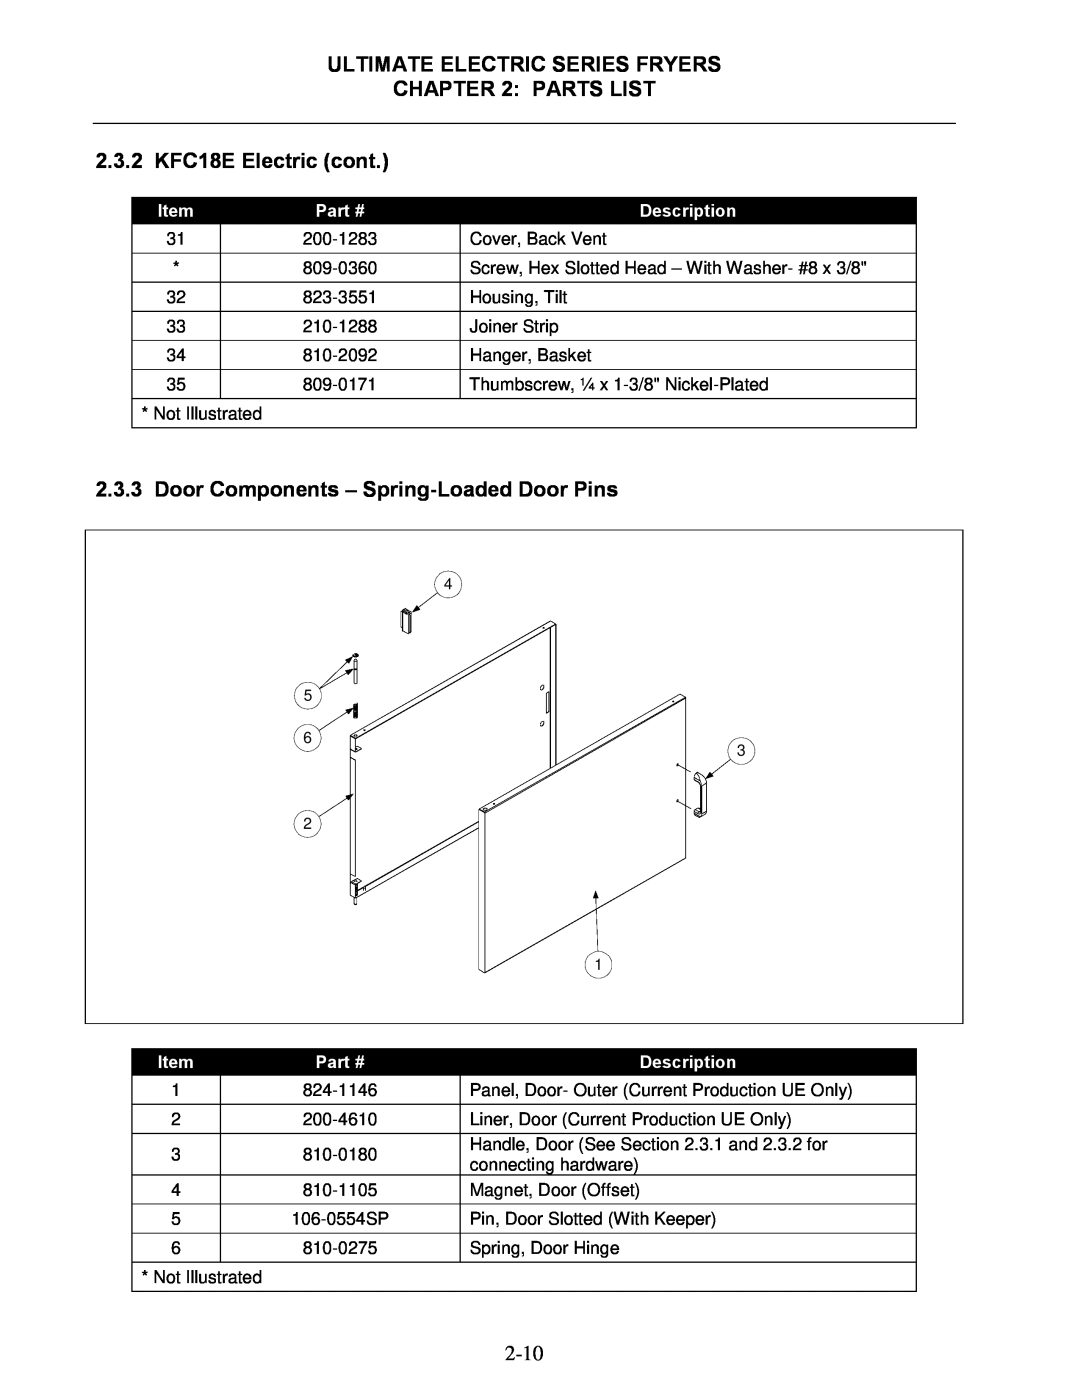 Frymaster manual Door Components - Spring-LoadedDoor Pins, Ultimate Electric Series Fryers, Description 